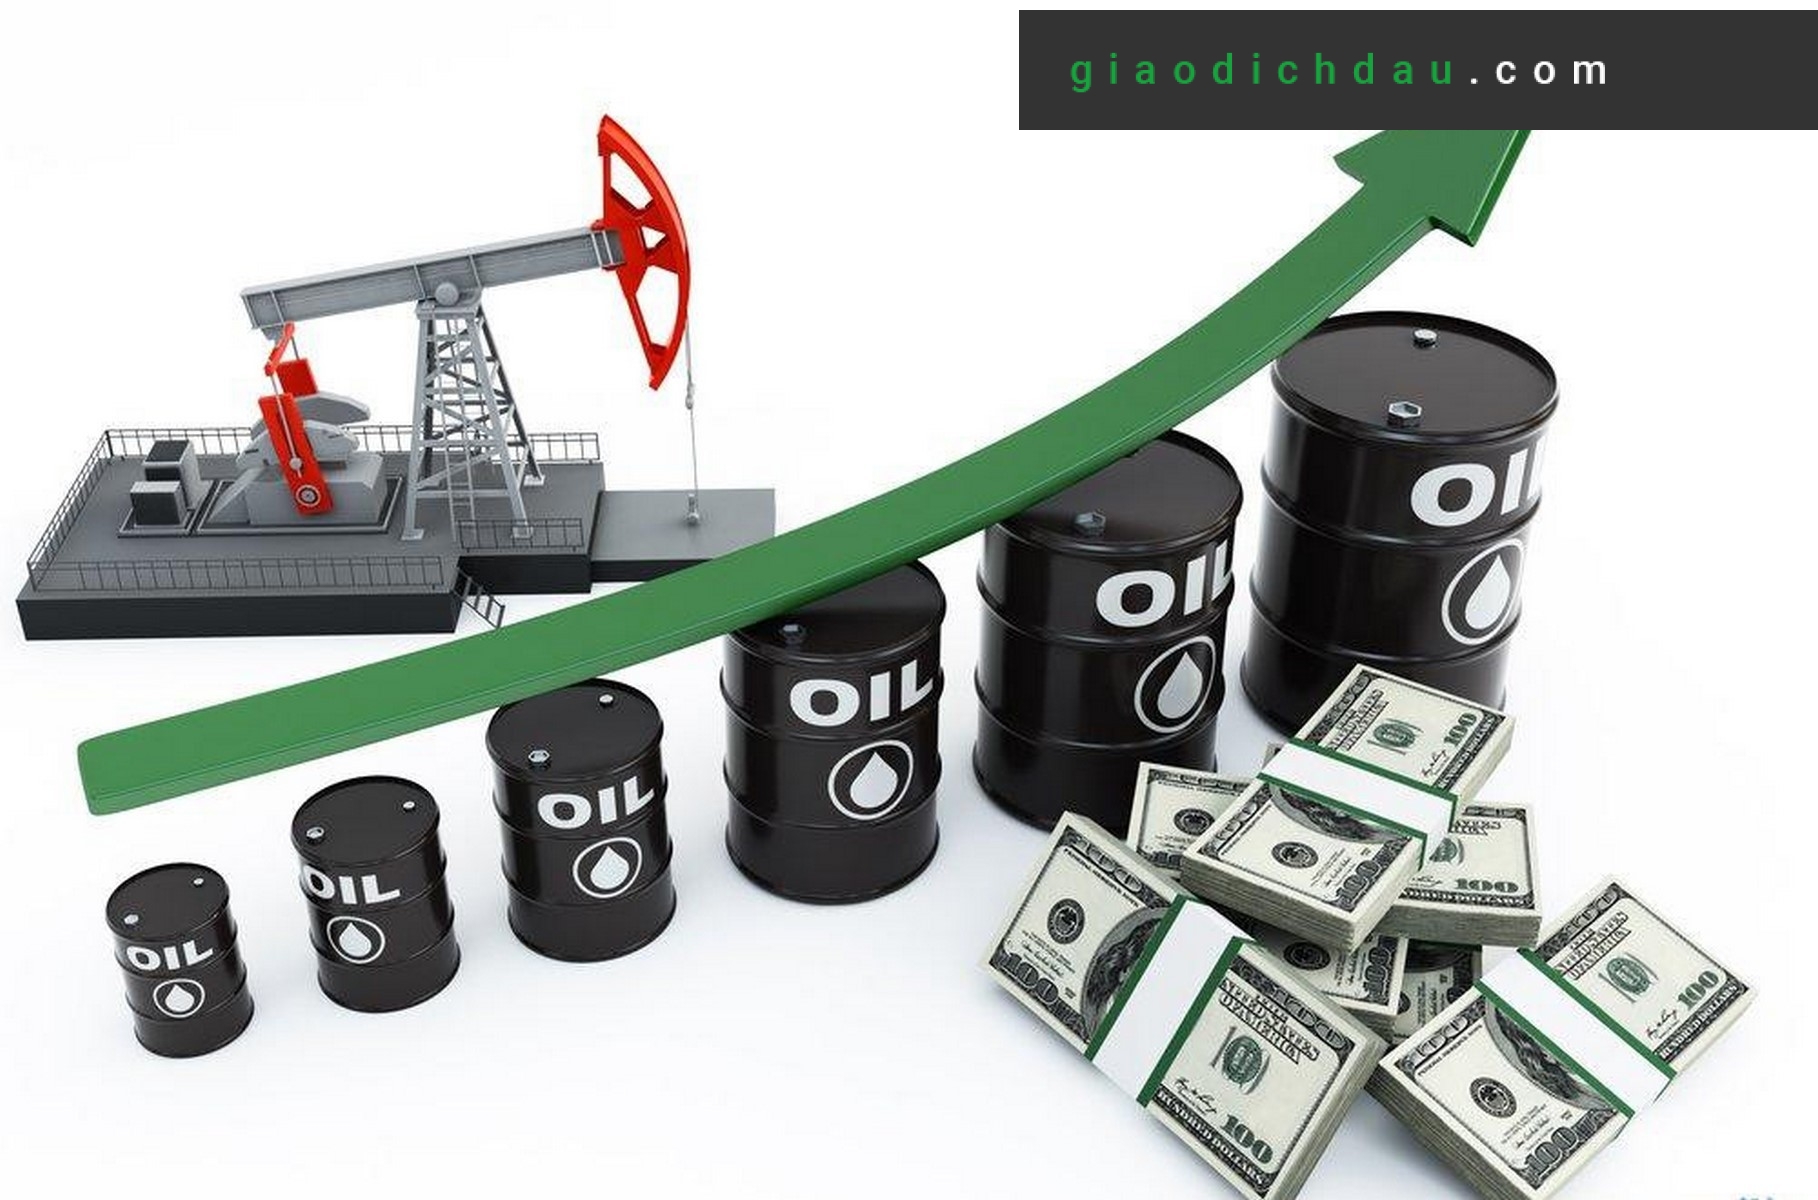 Có nhiều hình thức giao dịch với dầu thô phổ biến trên thị trường, cách đầu tư cũng đơn giản